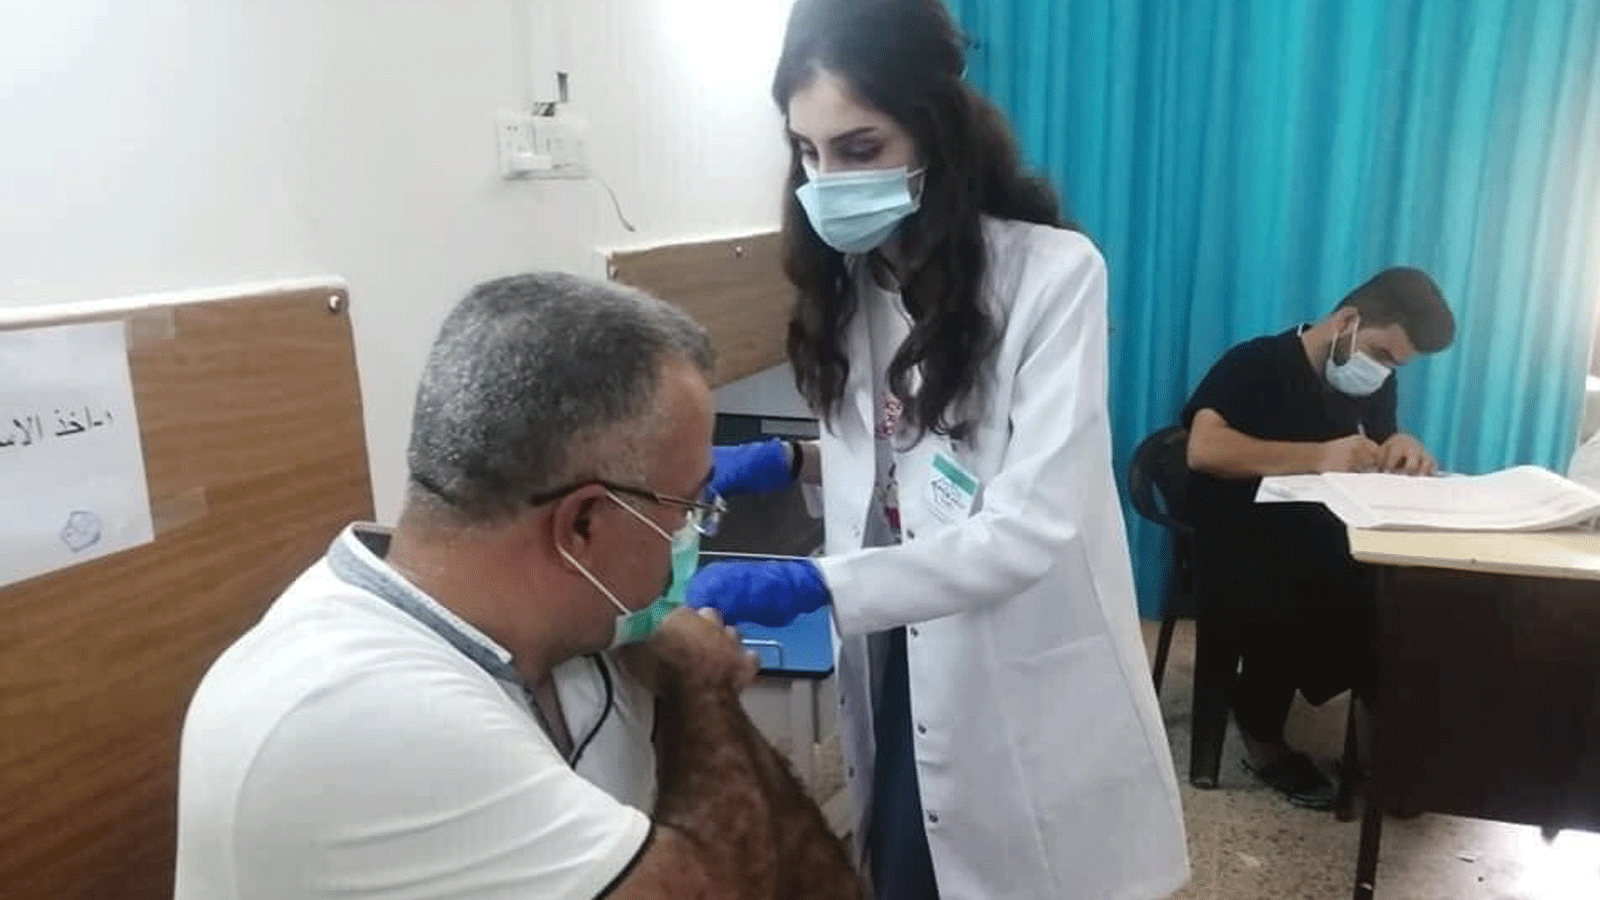 طبيبة تُلقّح عراقياً ضد فايروس كورونا مع تحذير وزارة الصحة اليوم الاثنين من موجة رابعة للجائحة (الصحة العراقية)